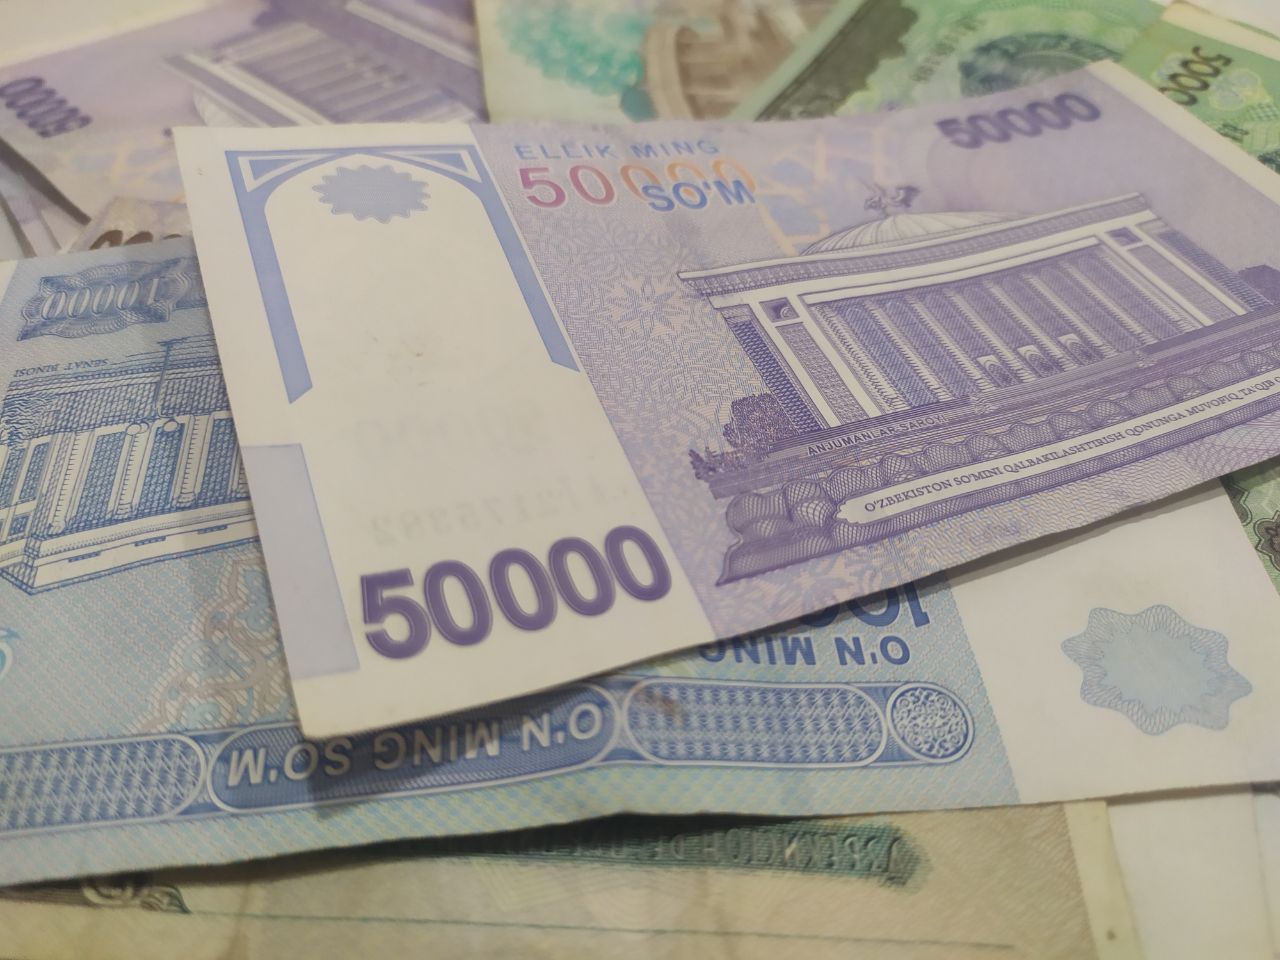 В Узбекистане снизят размер оплаты за оказание отдельных государственных услуг